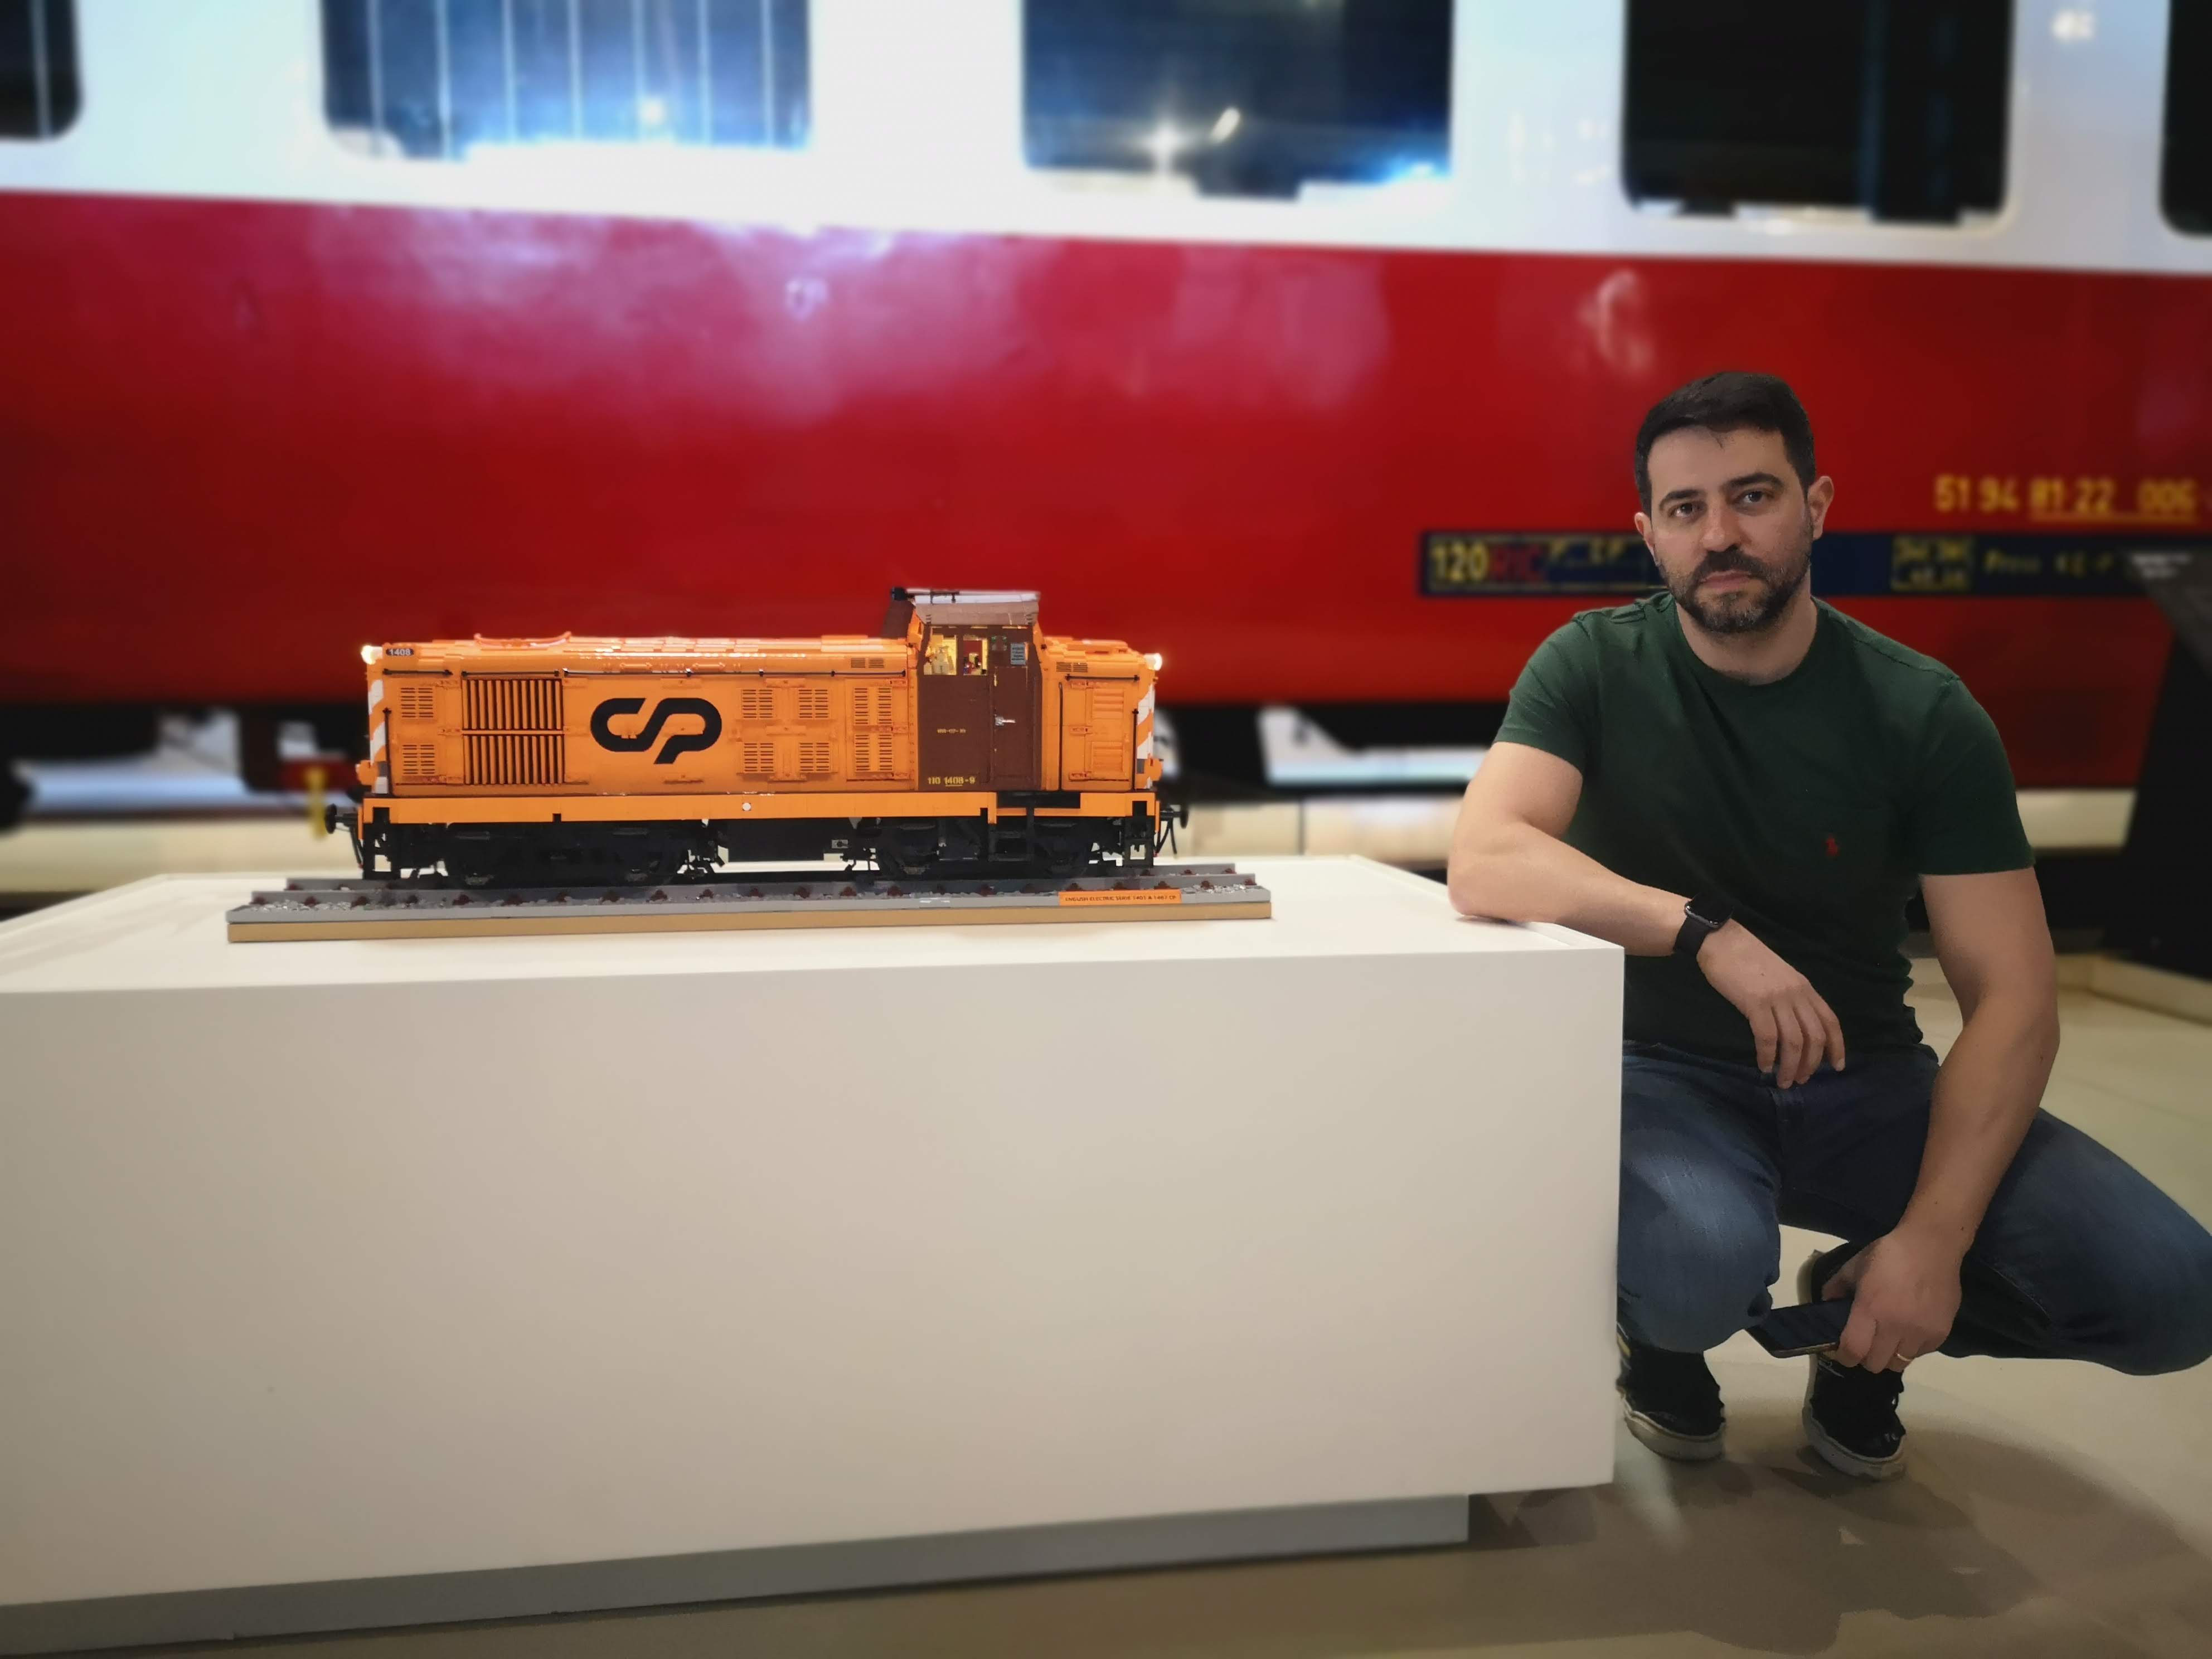 Museu Nacional Ferroviário recebe Locomotiva CP 1408 em Lego